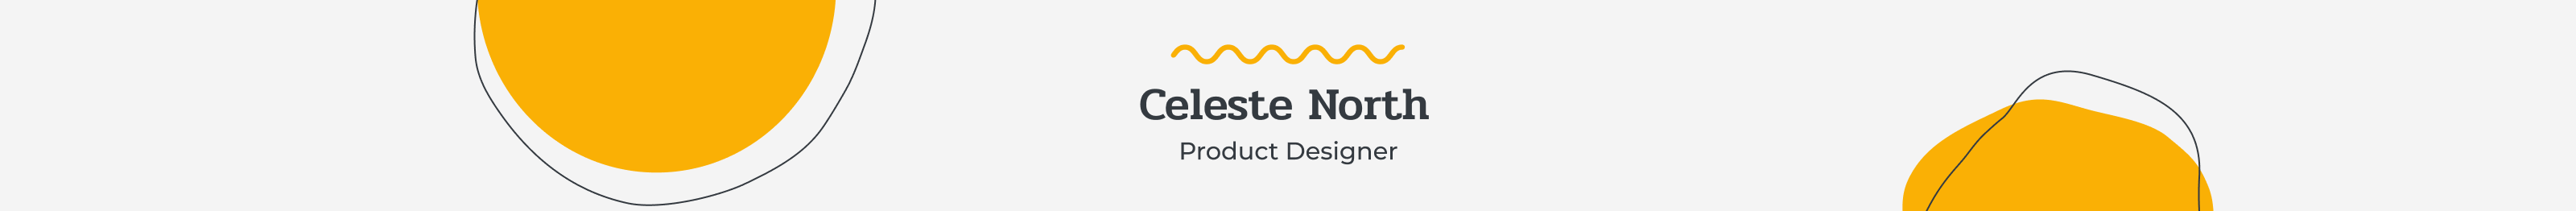 Celeste North's profile banner